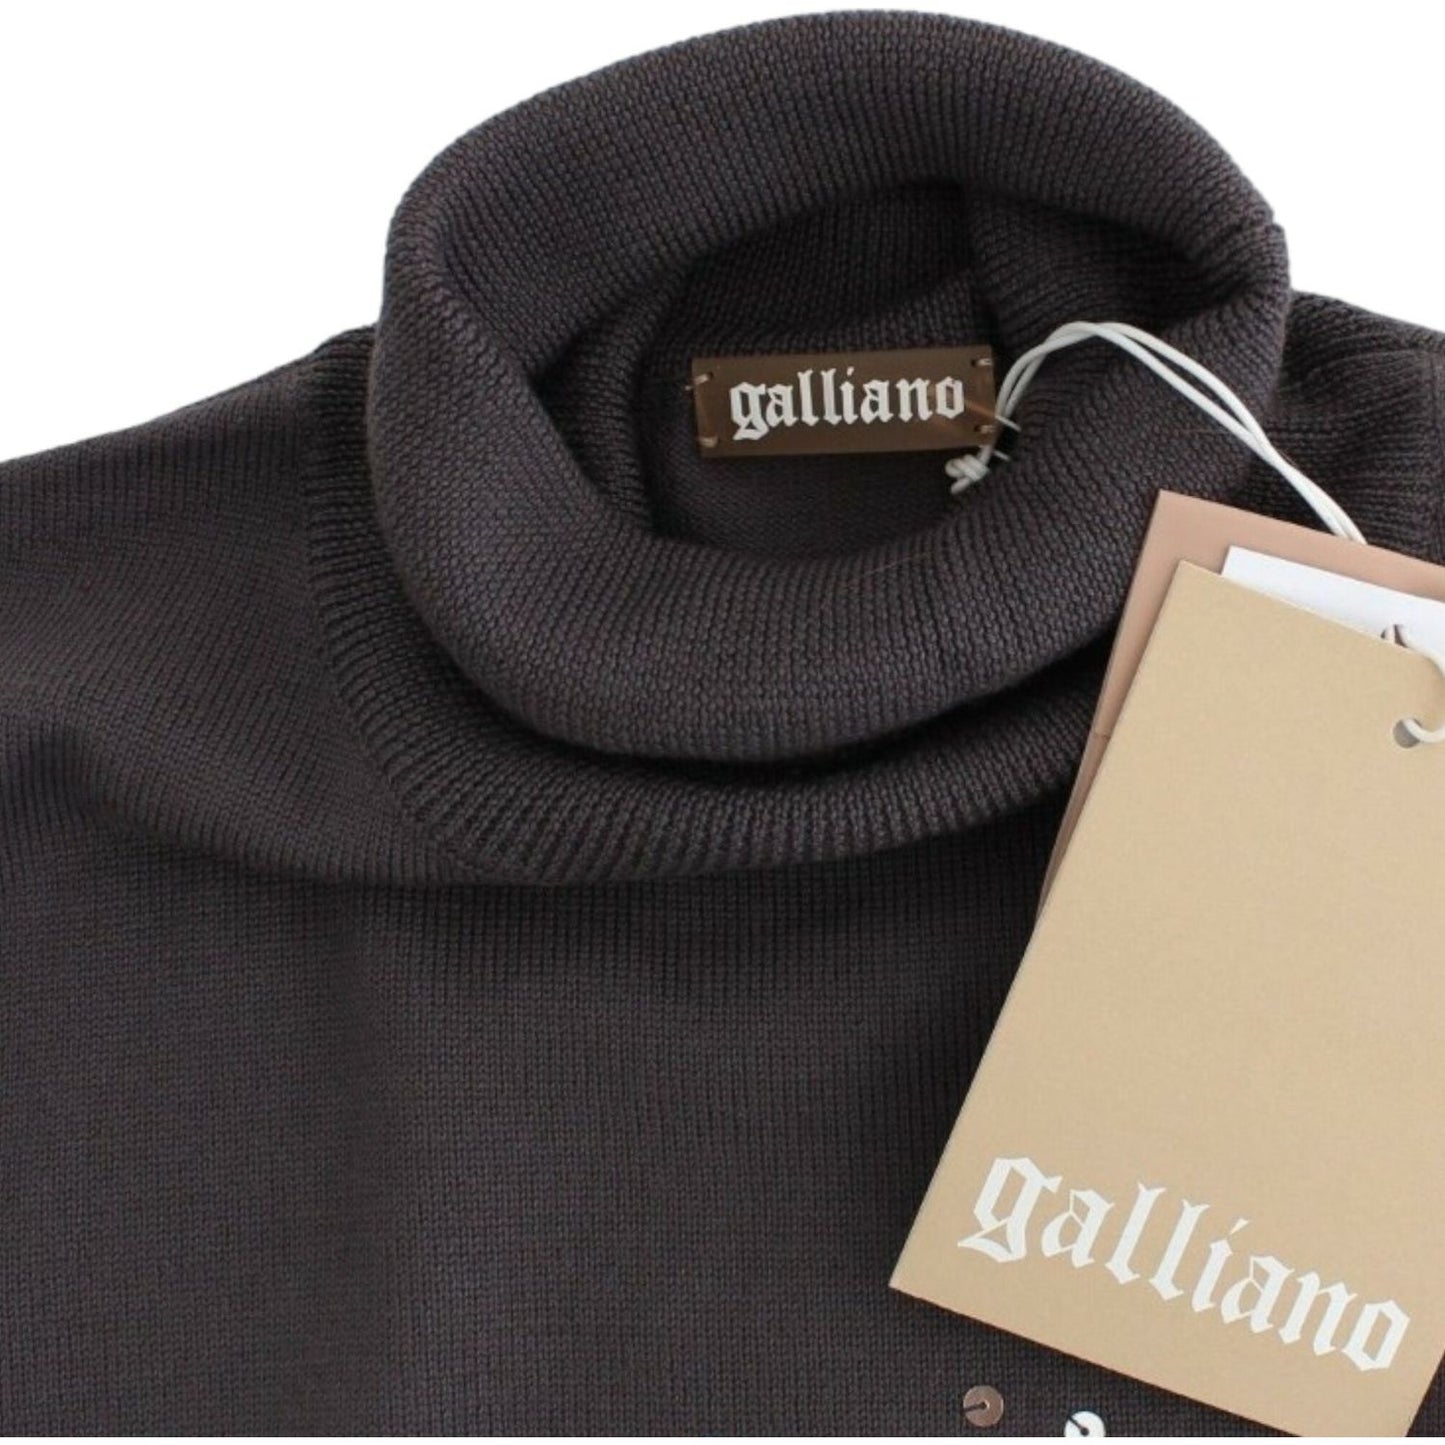 John Galliano Elegant Virgin Wool Turtleneck Sweater brown-turtleneck-cotton-sweater